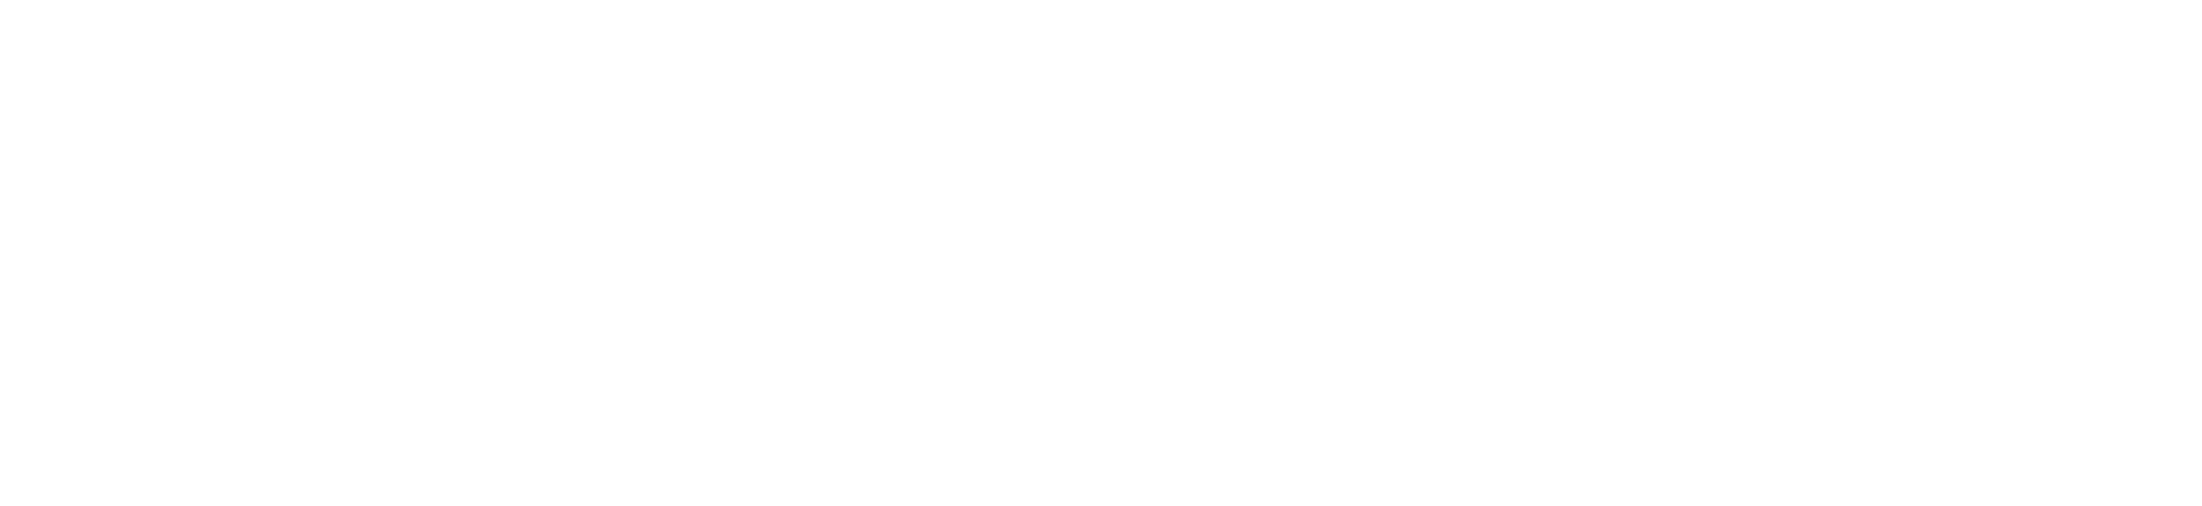 textrepeater logo